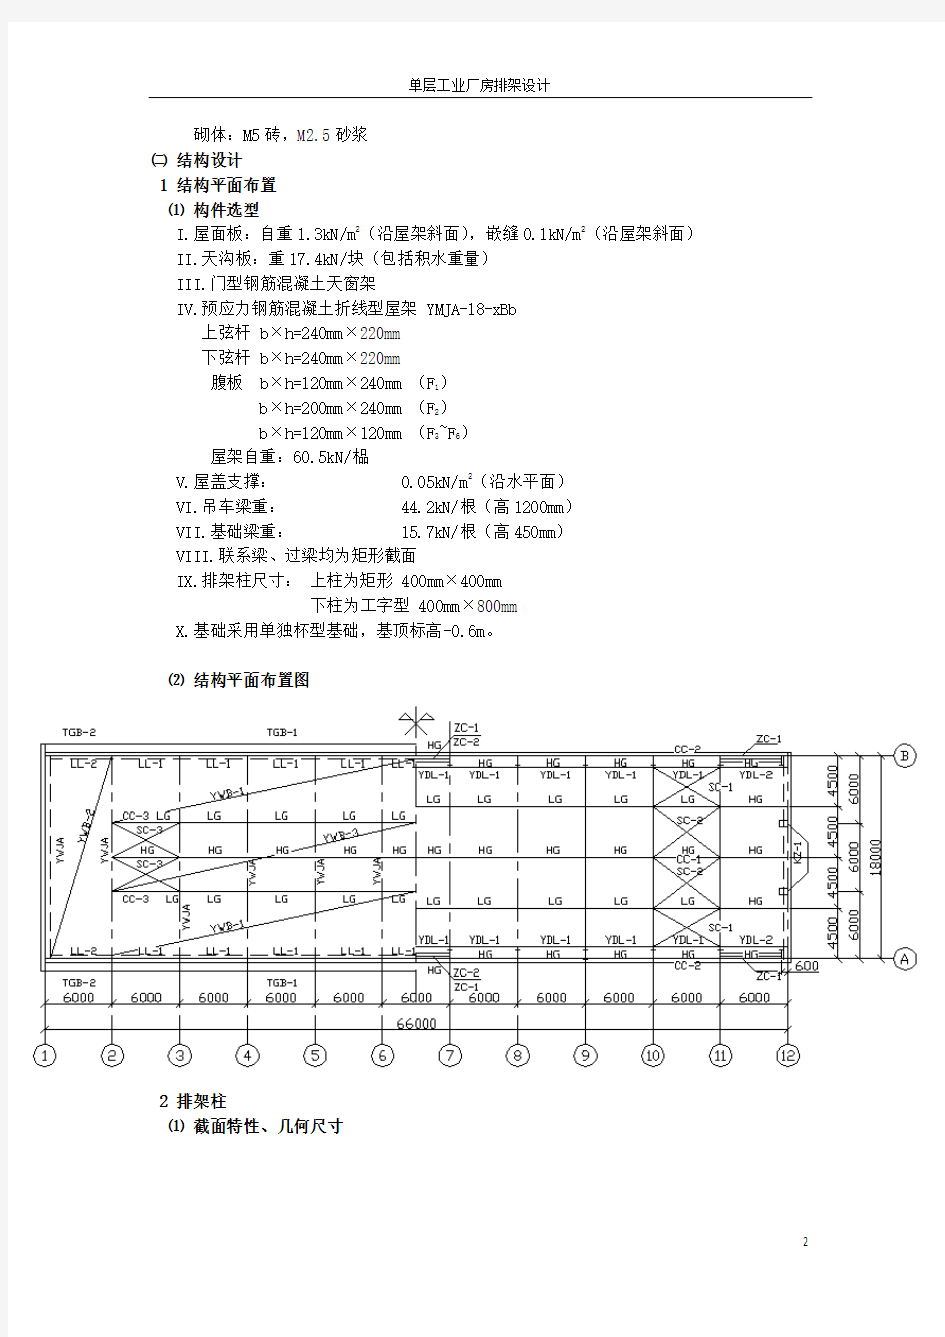 单层工业厂房排架结构设计计算书(同济大学)